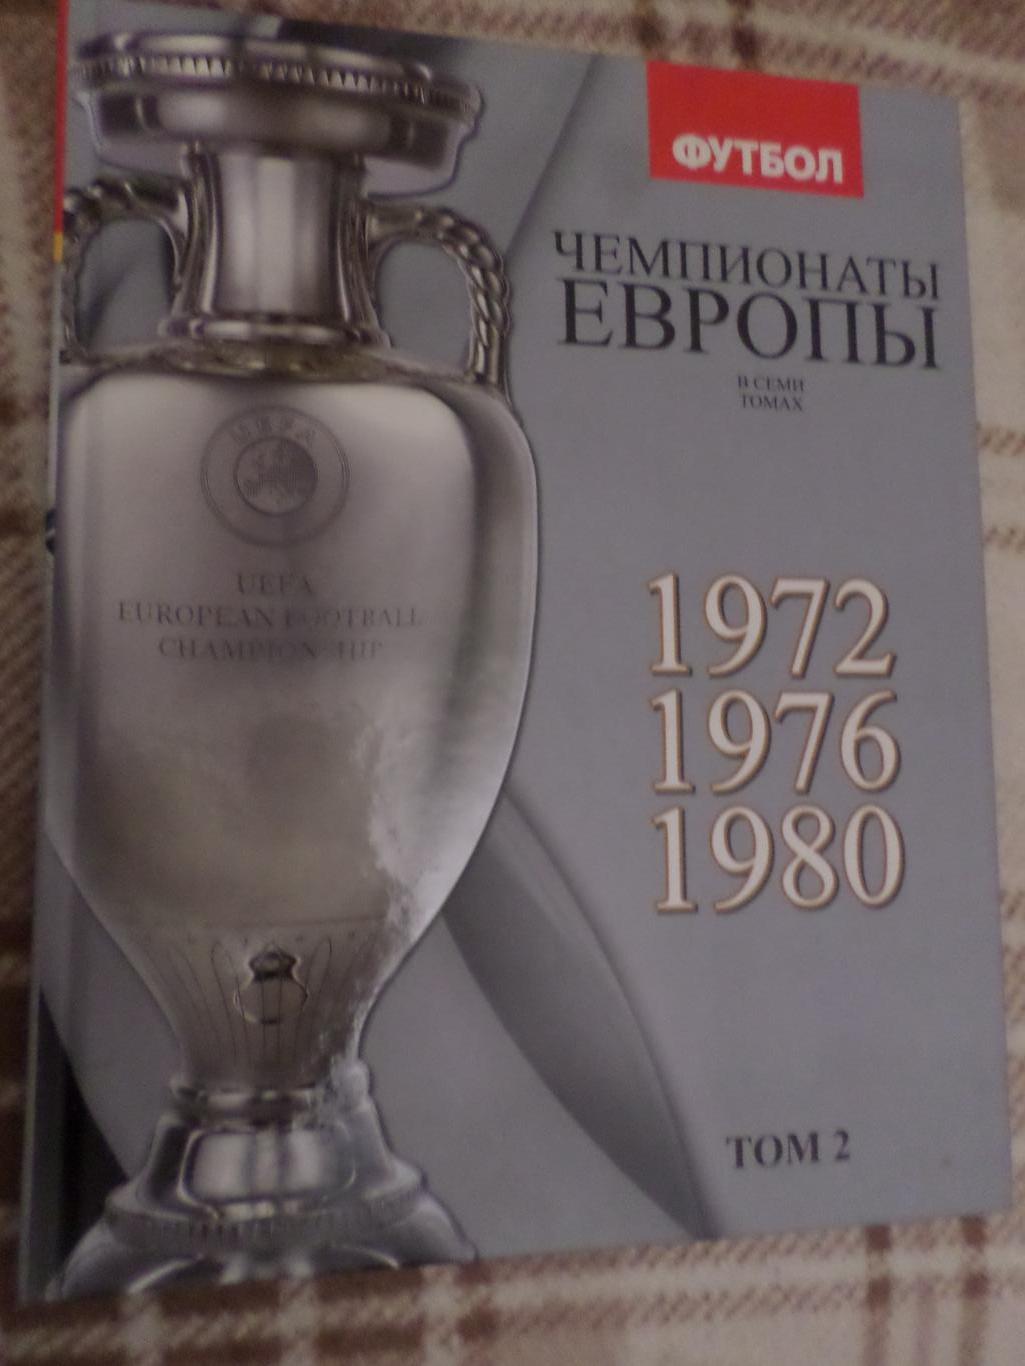 Франков, Талиновский - Чемпионаты Европы по футболу том 2 1972-1980 г